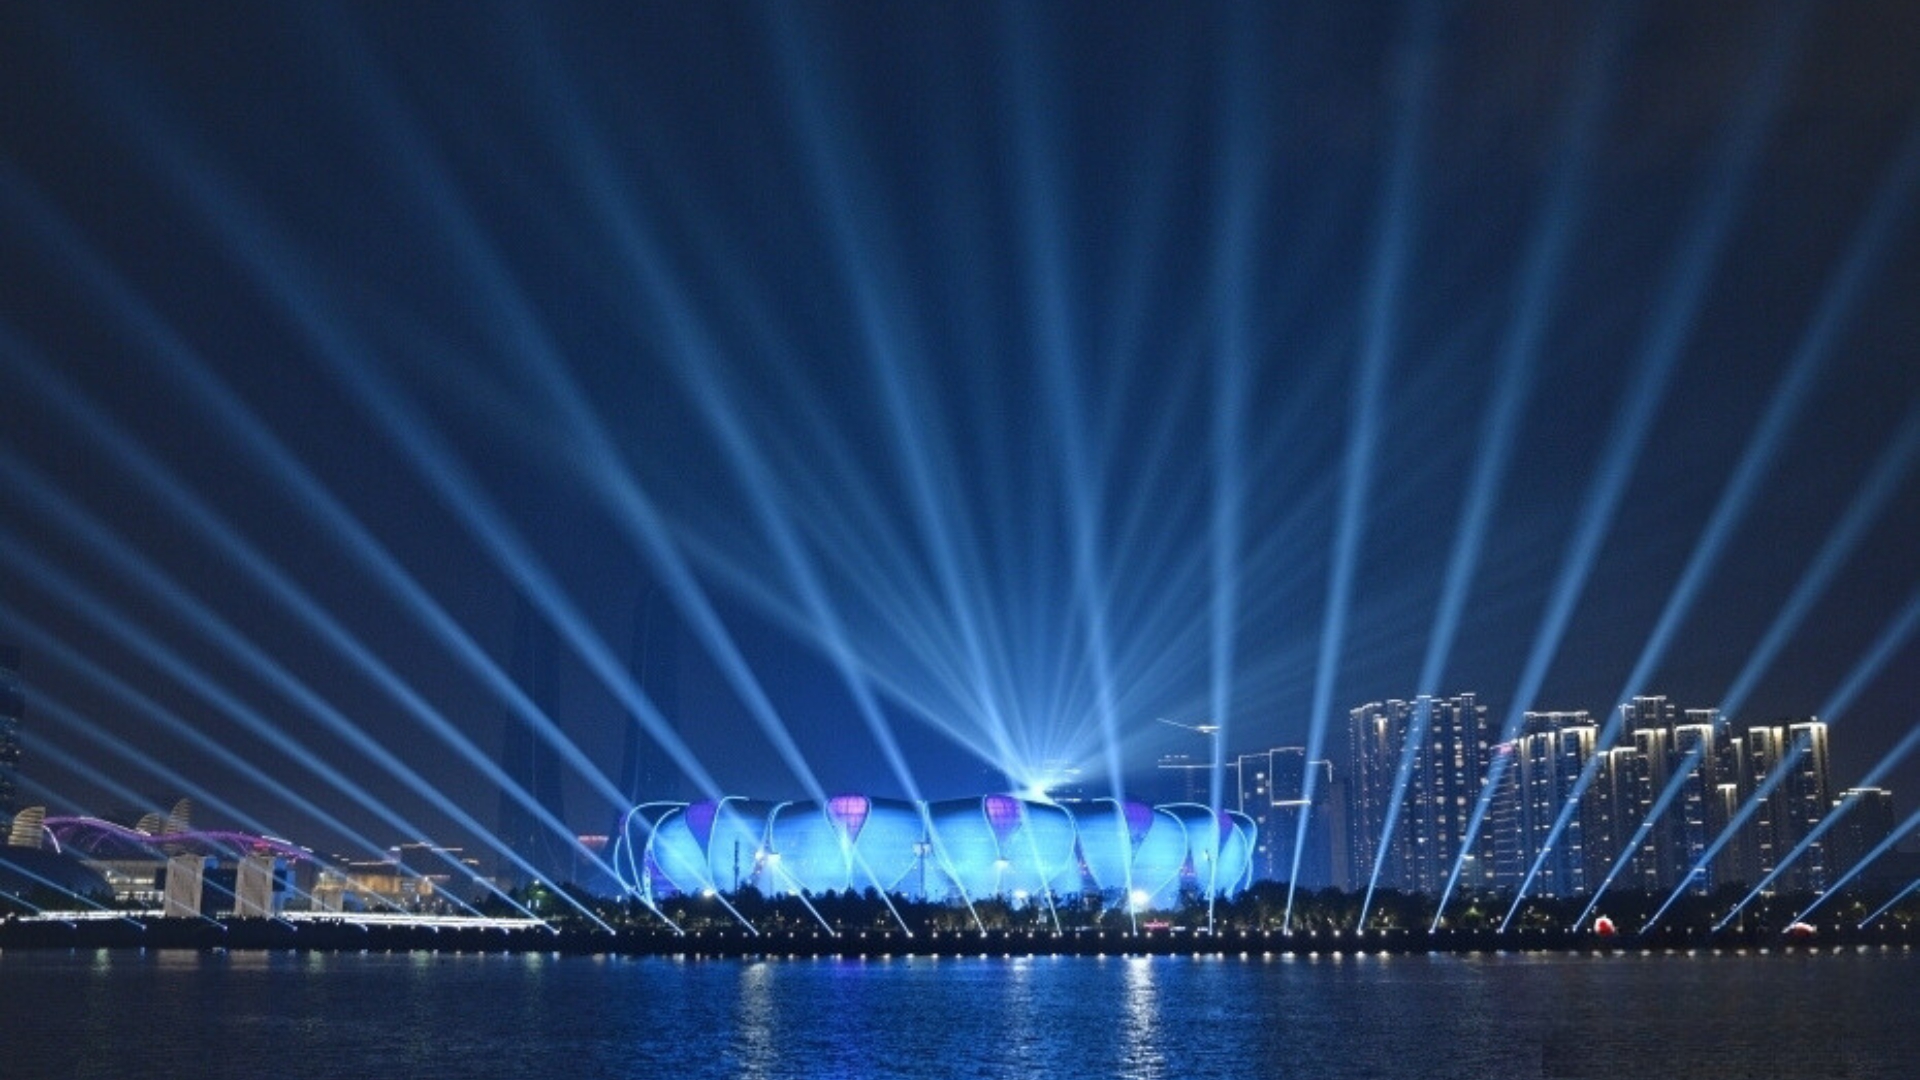 The 19th Asian Games Hangzhou